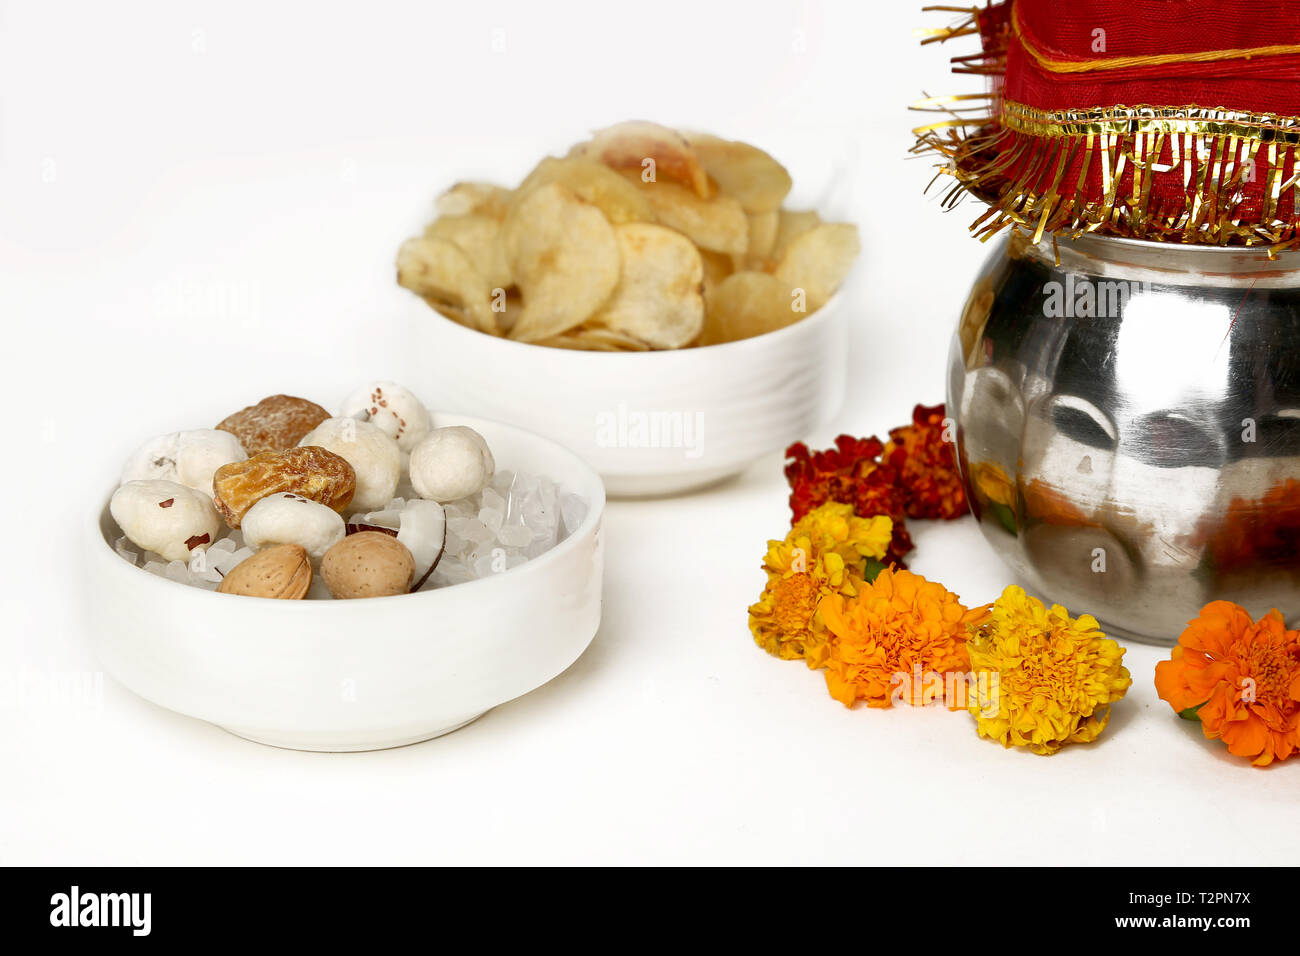 Kalash con noce di cocco e chunni con decorazioni floreali per navratri pooja. Immagine della frutta secca e potato chips nel recipiente. Isolato sul bianco bac Foto Stock